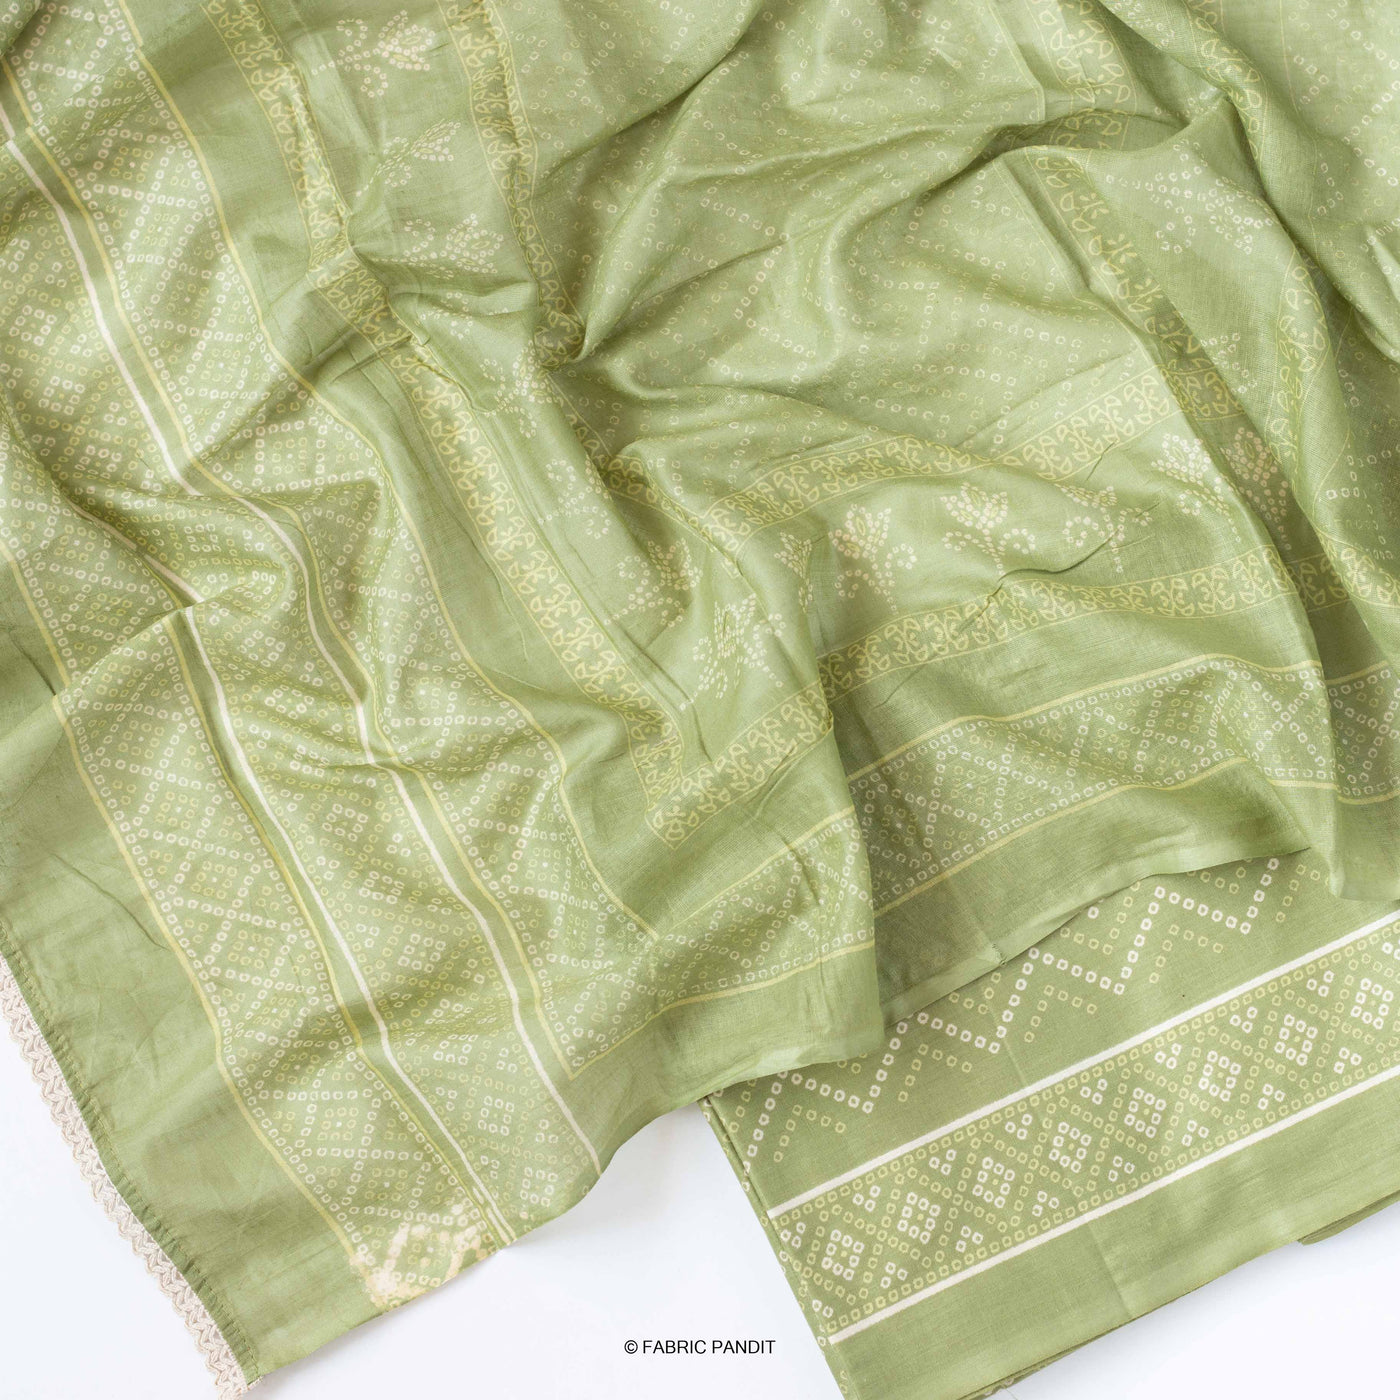 Fabric Pandit Light Green Geometric Floral Earthen Bandhani print pure Cotton Santin Unstitched Suit